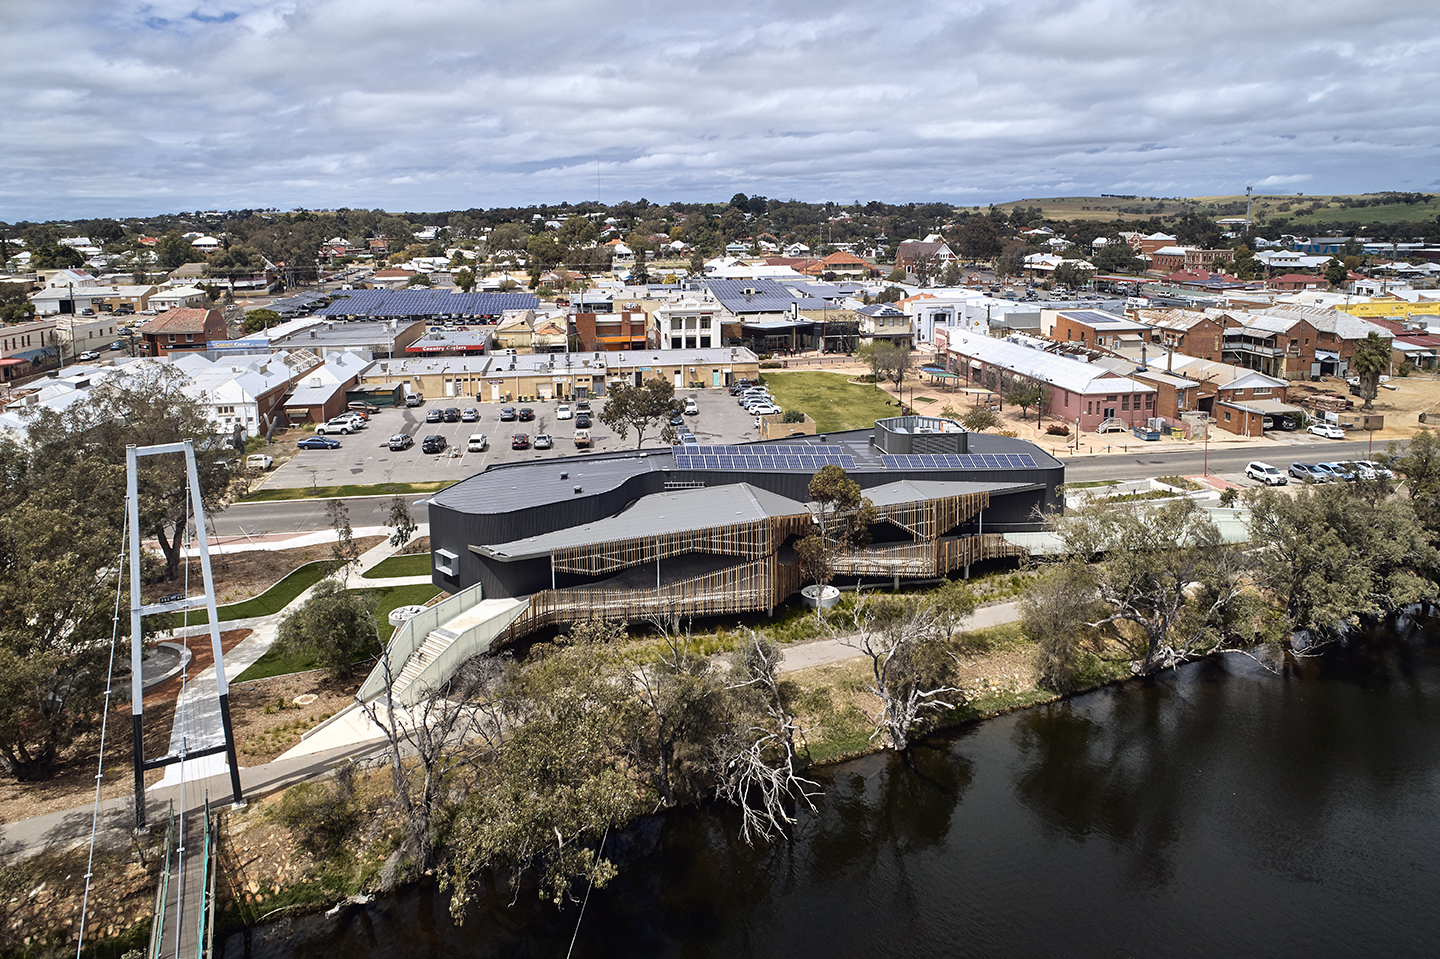 Noongar australia revista En Australia construyeron un centro cultural en memoria de sus aborígenes